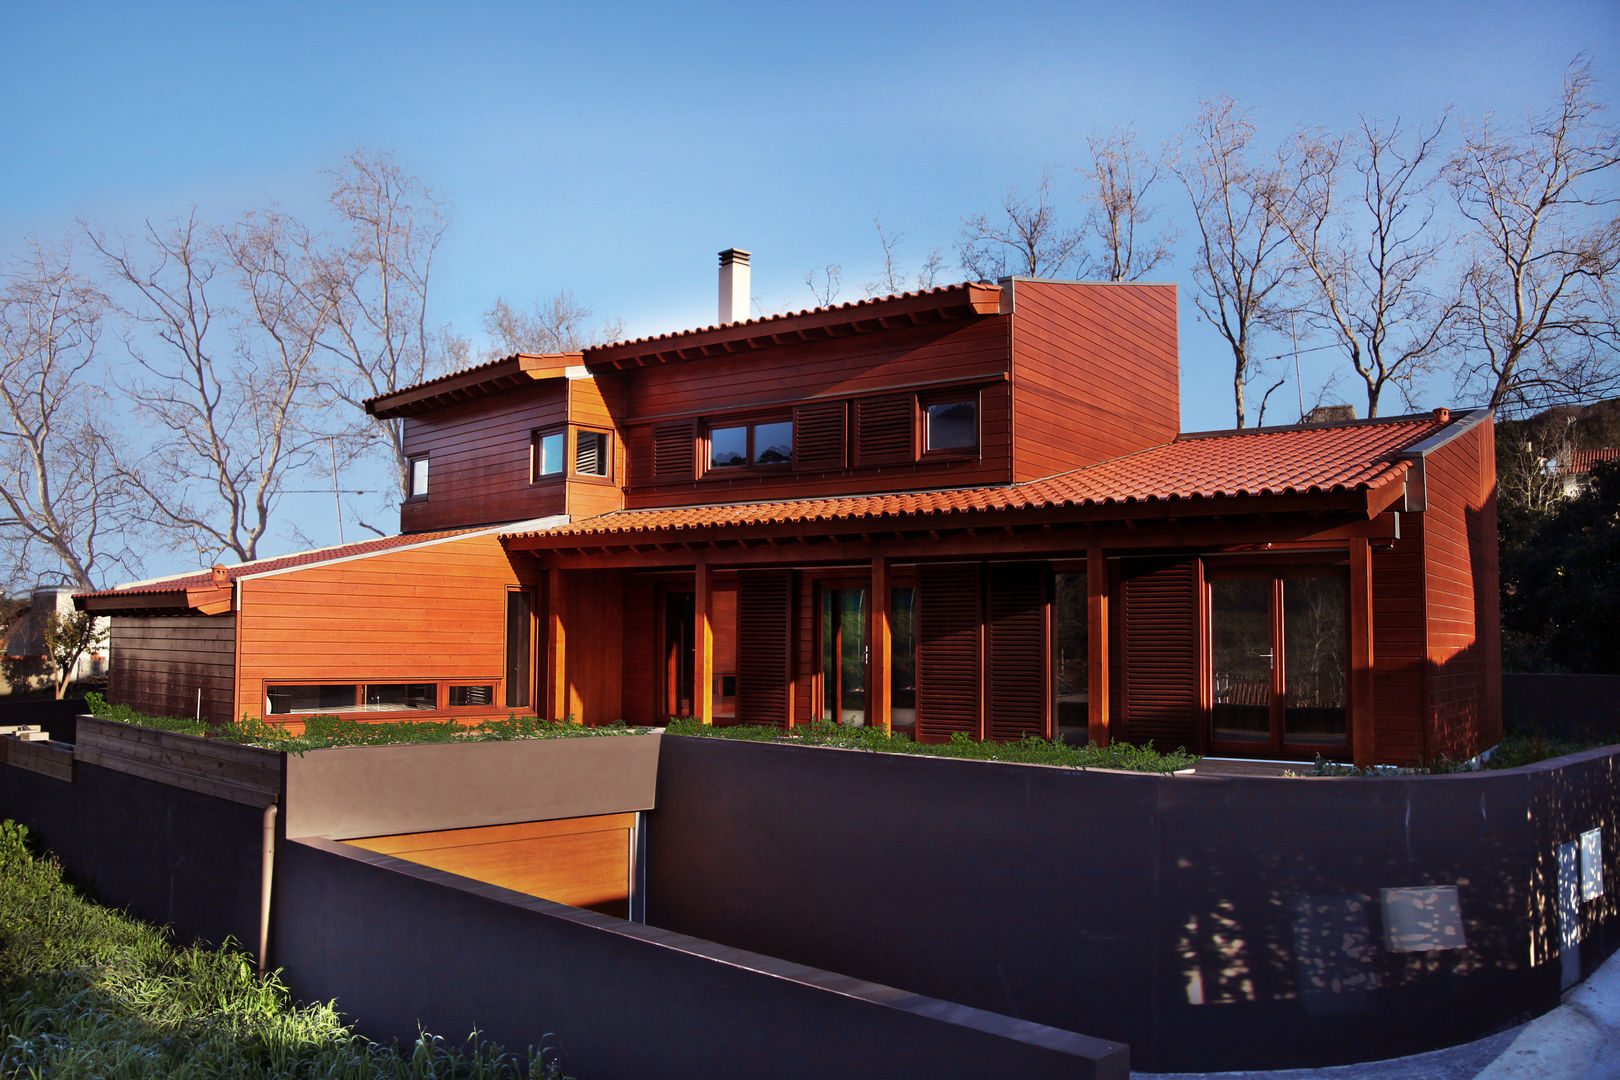 RUSTICASA | 100 projetos | Portugal + Espanha, RUSTICASA RUSTICASA Chalets & maisons en bois Bois Effet bois